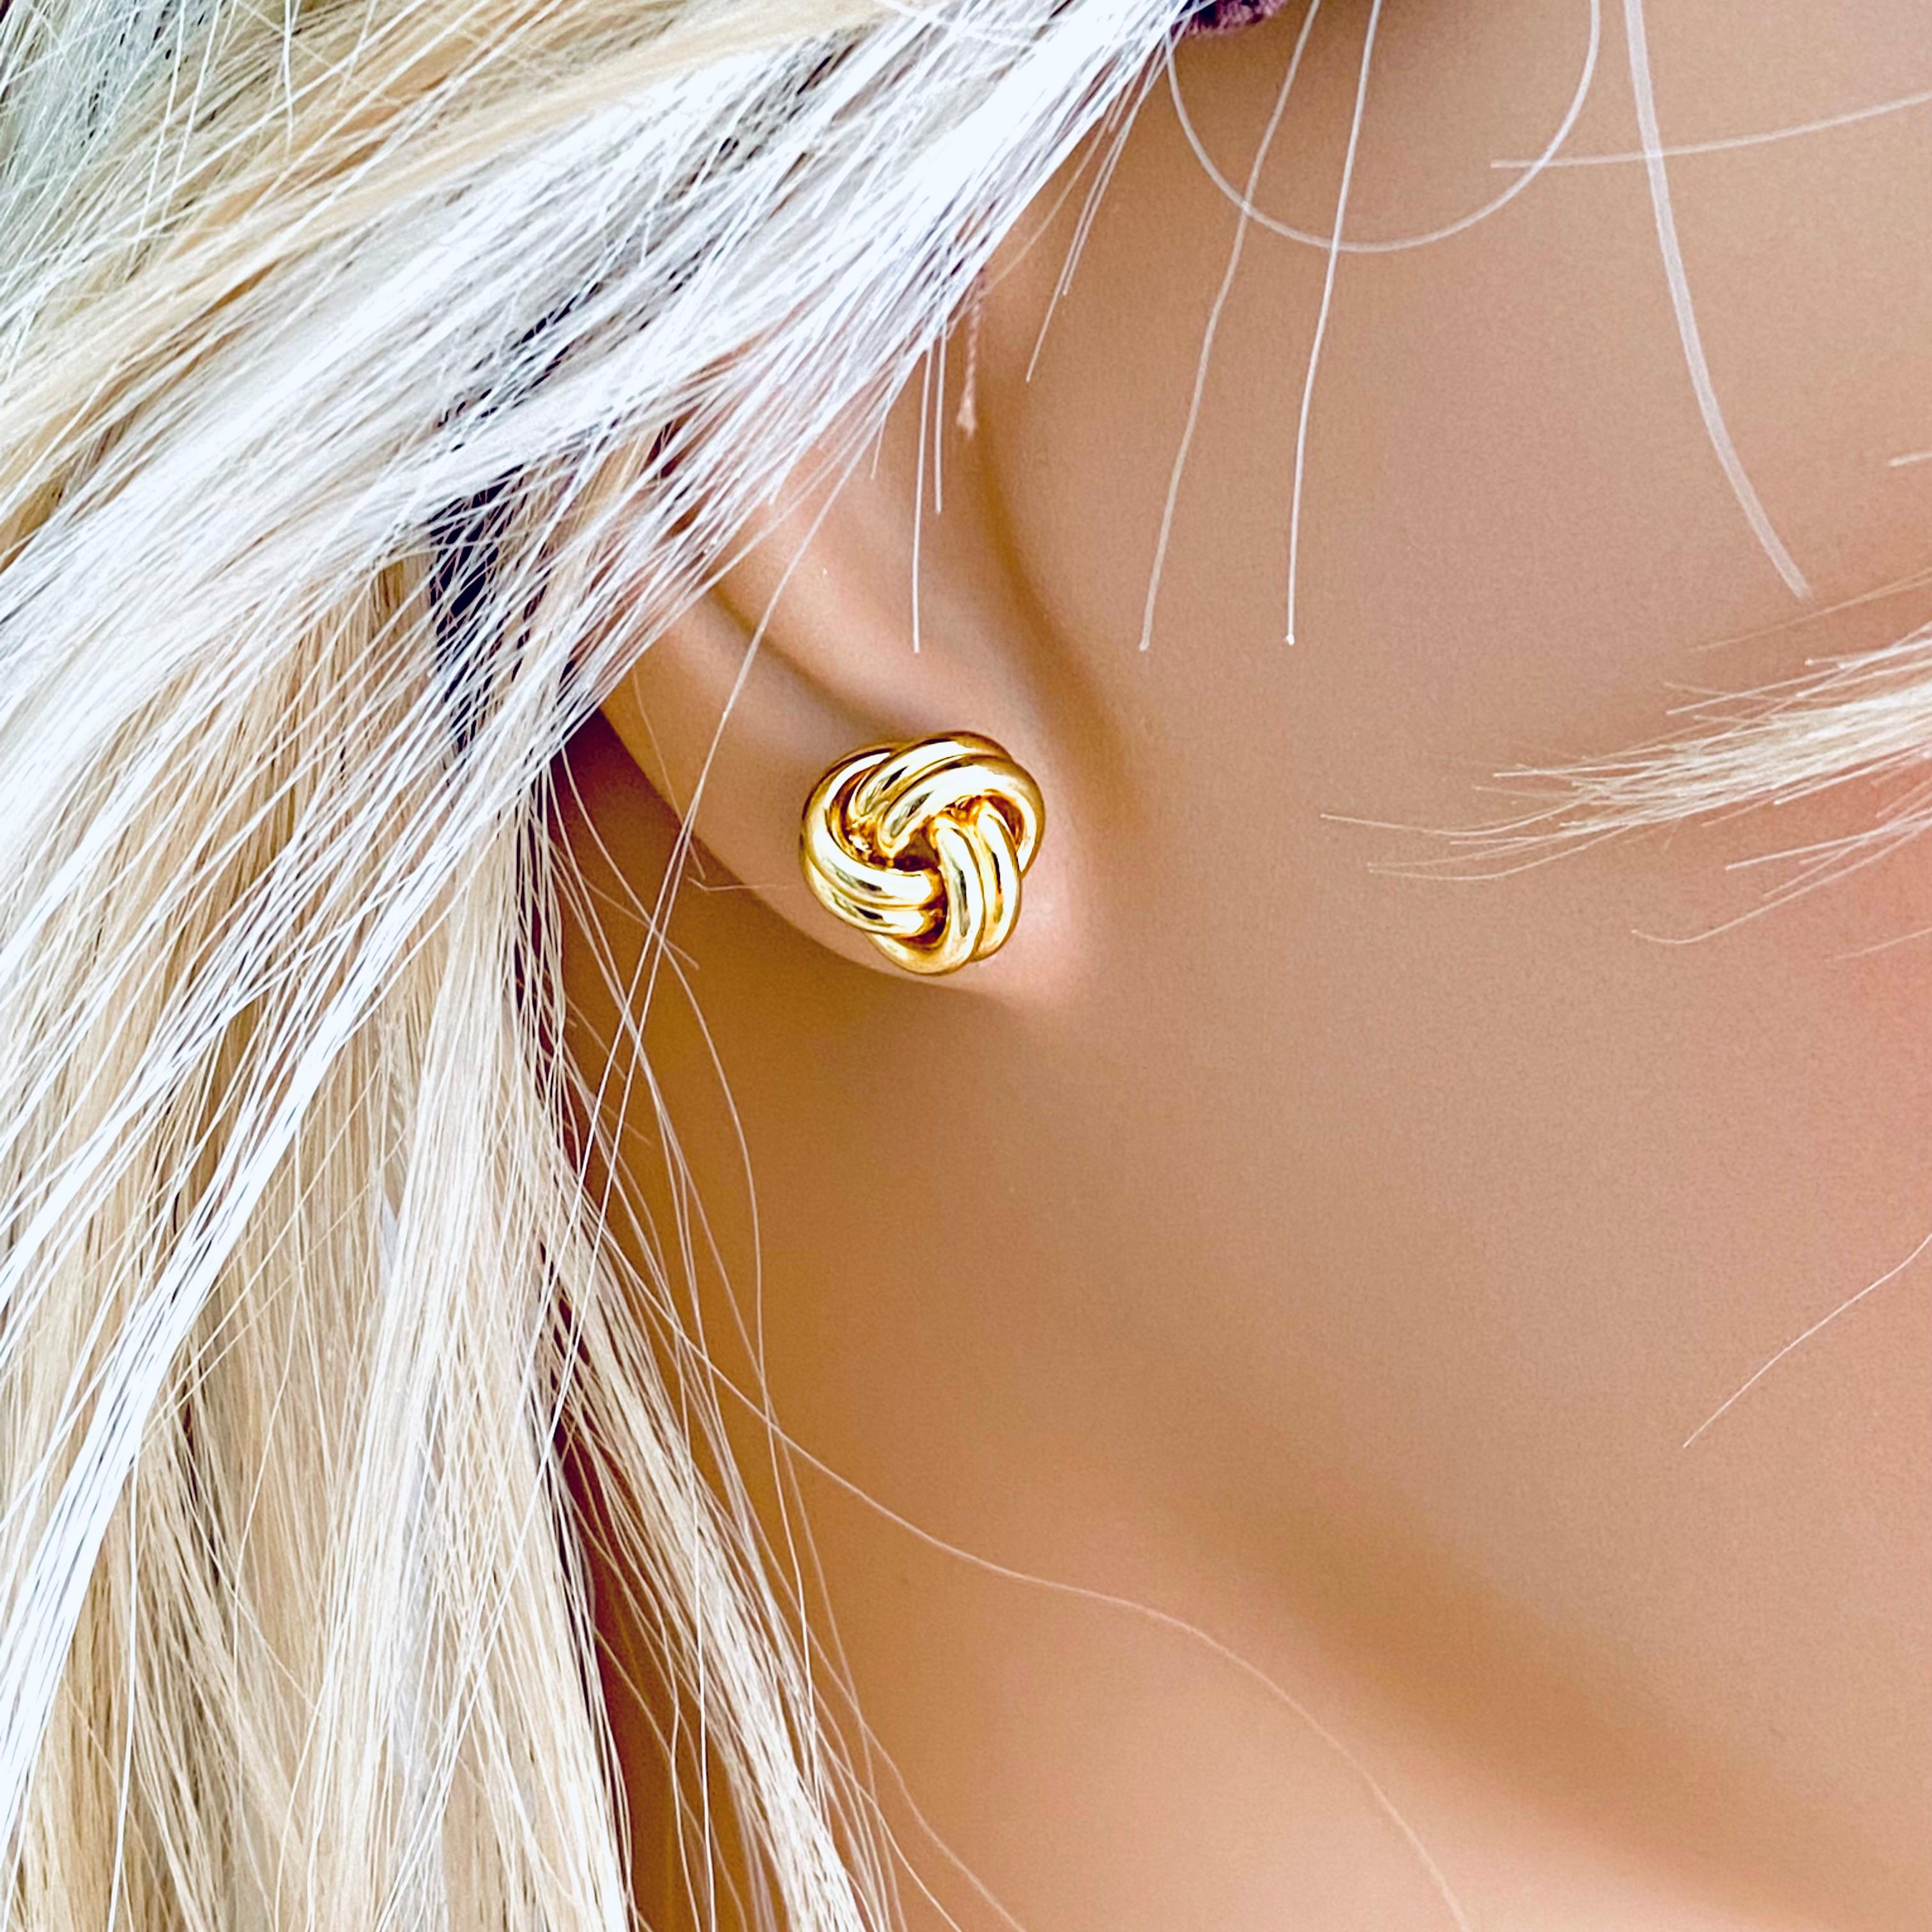 tiffany & co gold stud earrings